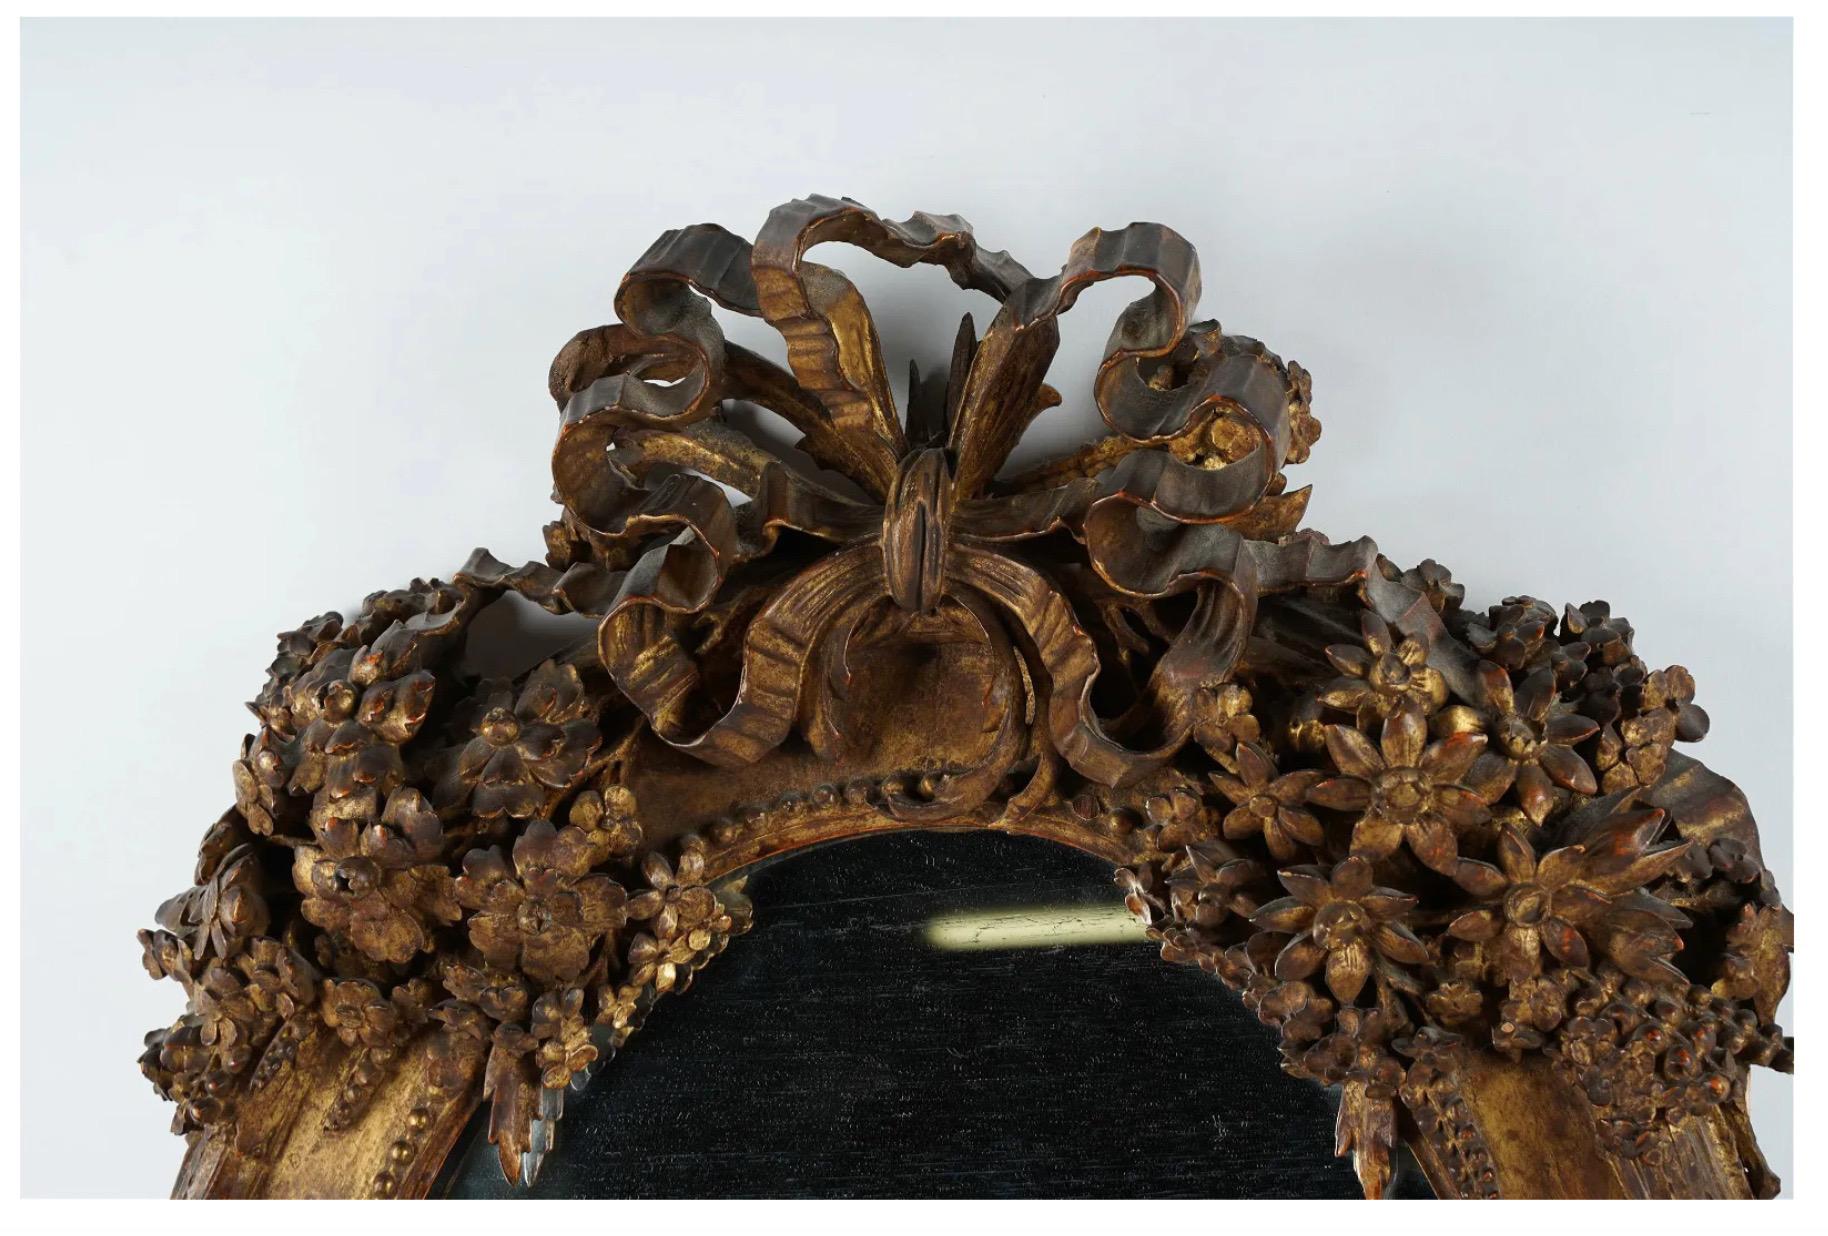 Il s'agit de l'un des miroirs d'époque Louis XVI les plus étonnants et les plus uniques que nous ayons vus. Les sculptures florales profondes et finement détaillées comprennent des tournesols, des lys, des marguerites et des roses. Les arcs en haut